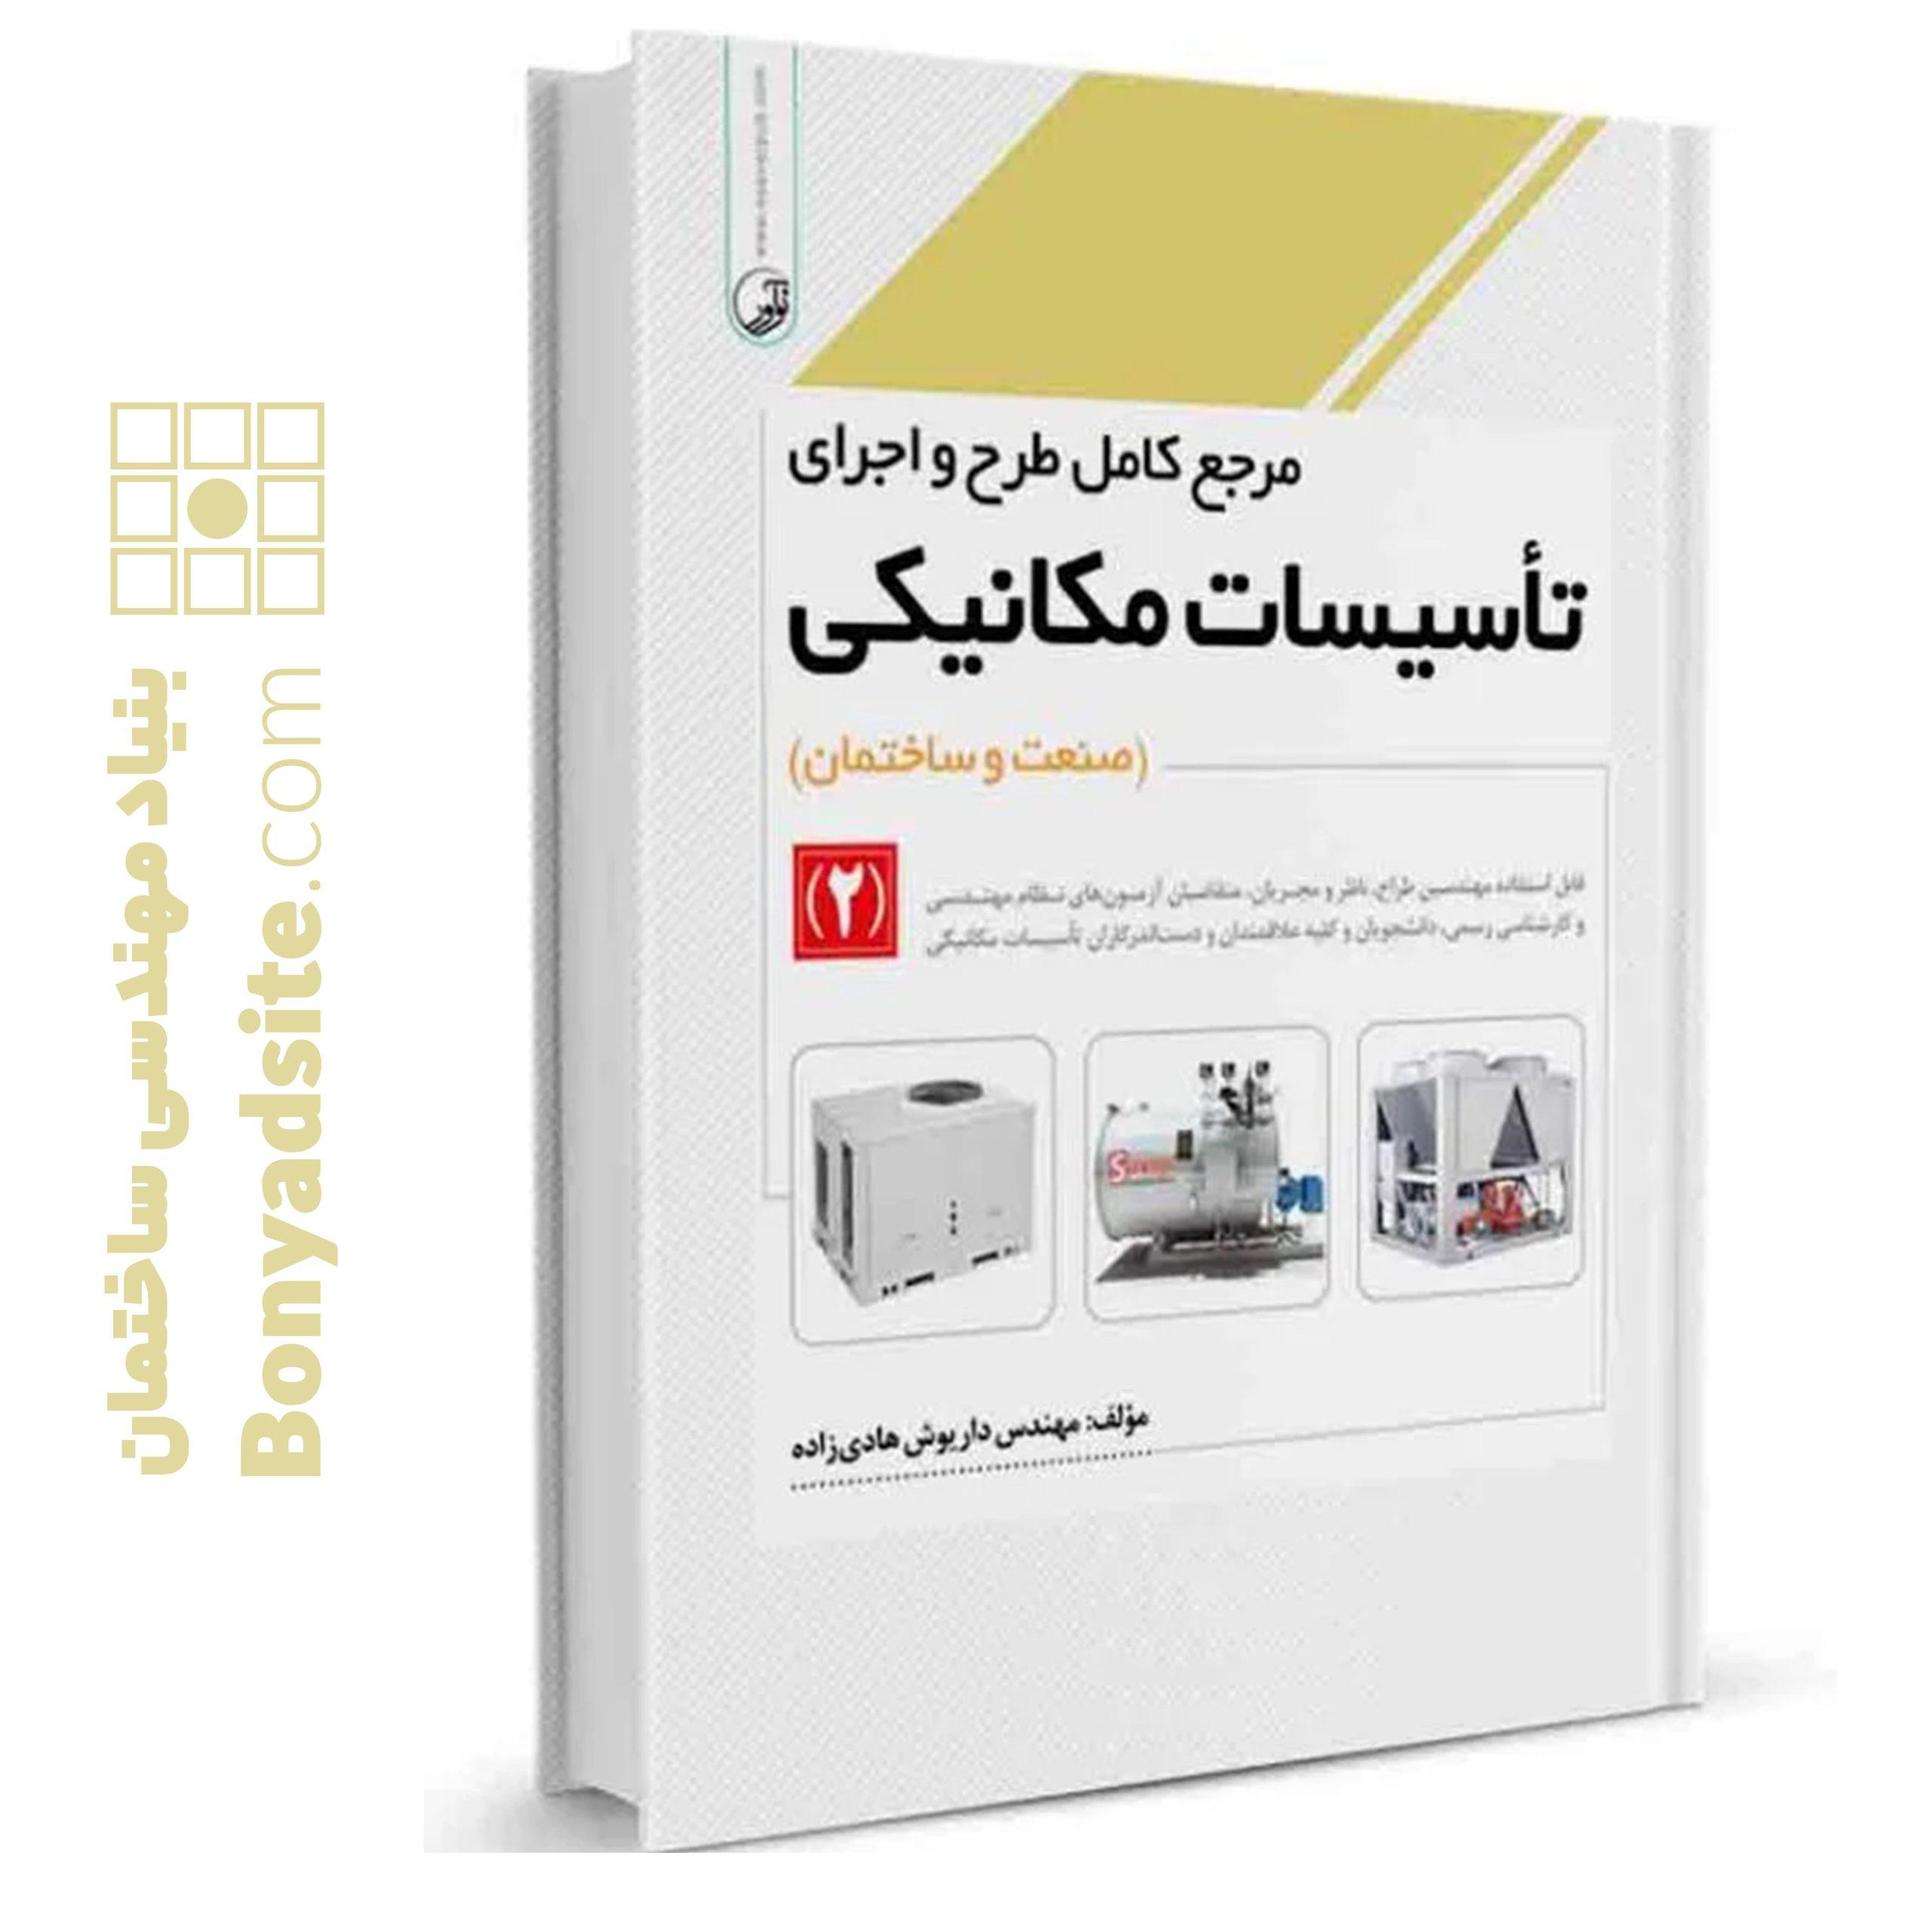 کتاب مرجع کامل طرح و اجرای تاسیسات مکانیکی (۲)